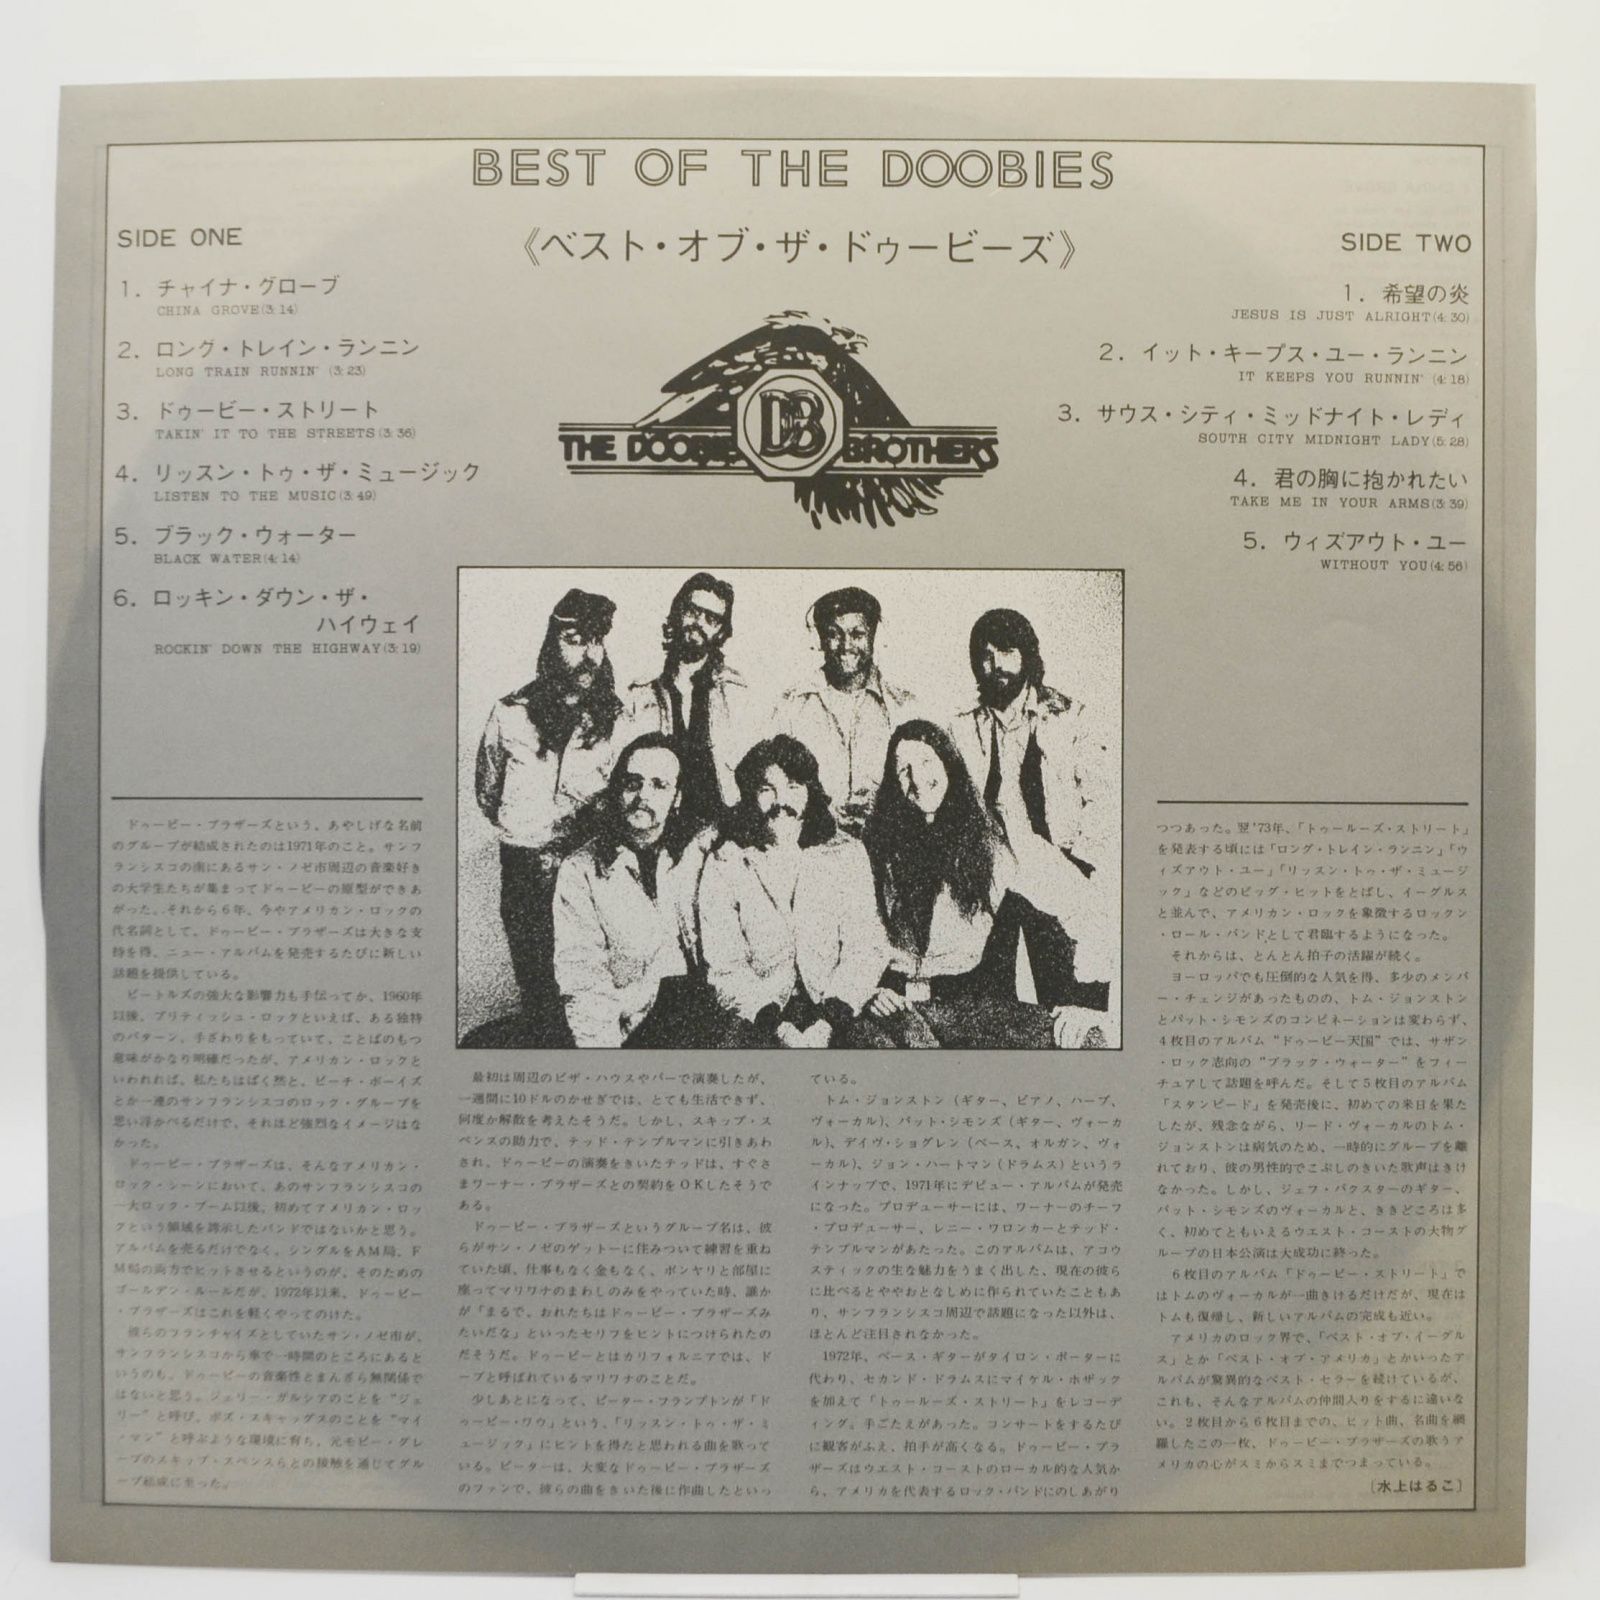 Doobie Brothers — Best Of The Doobies, 1976